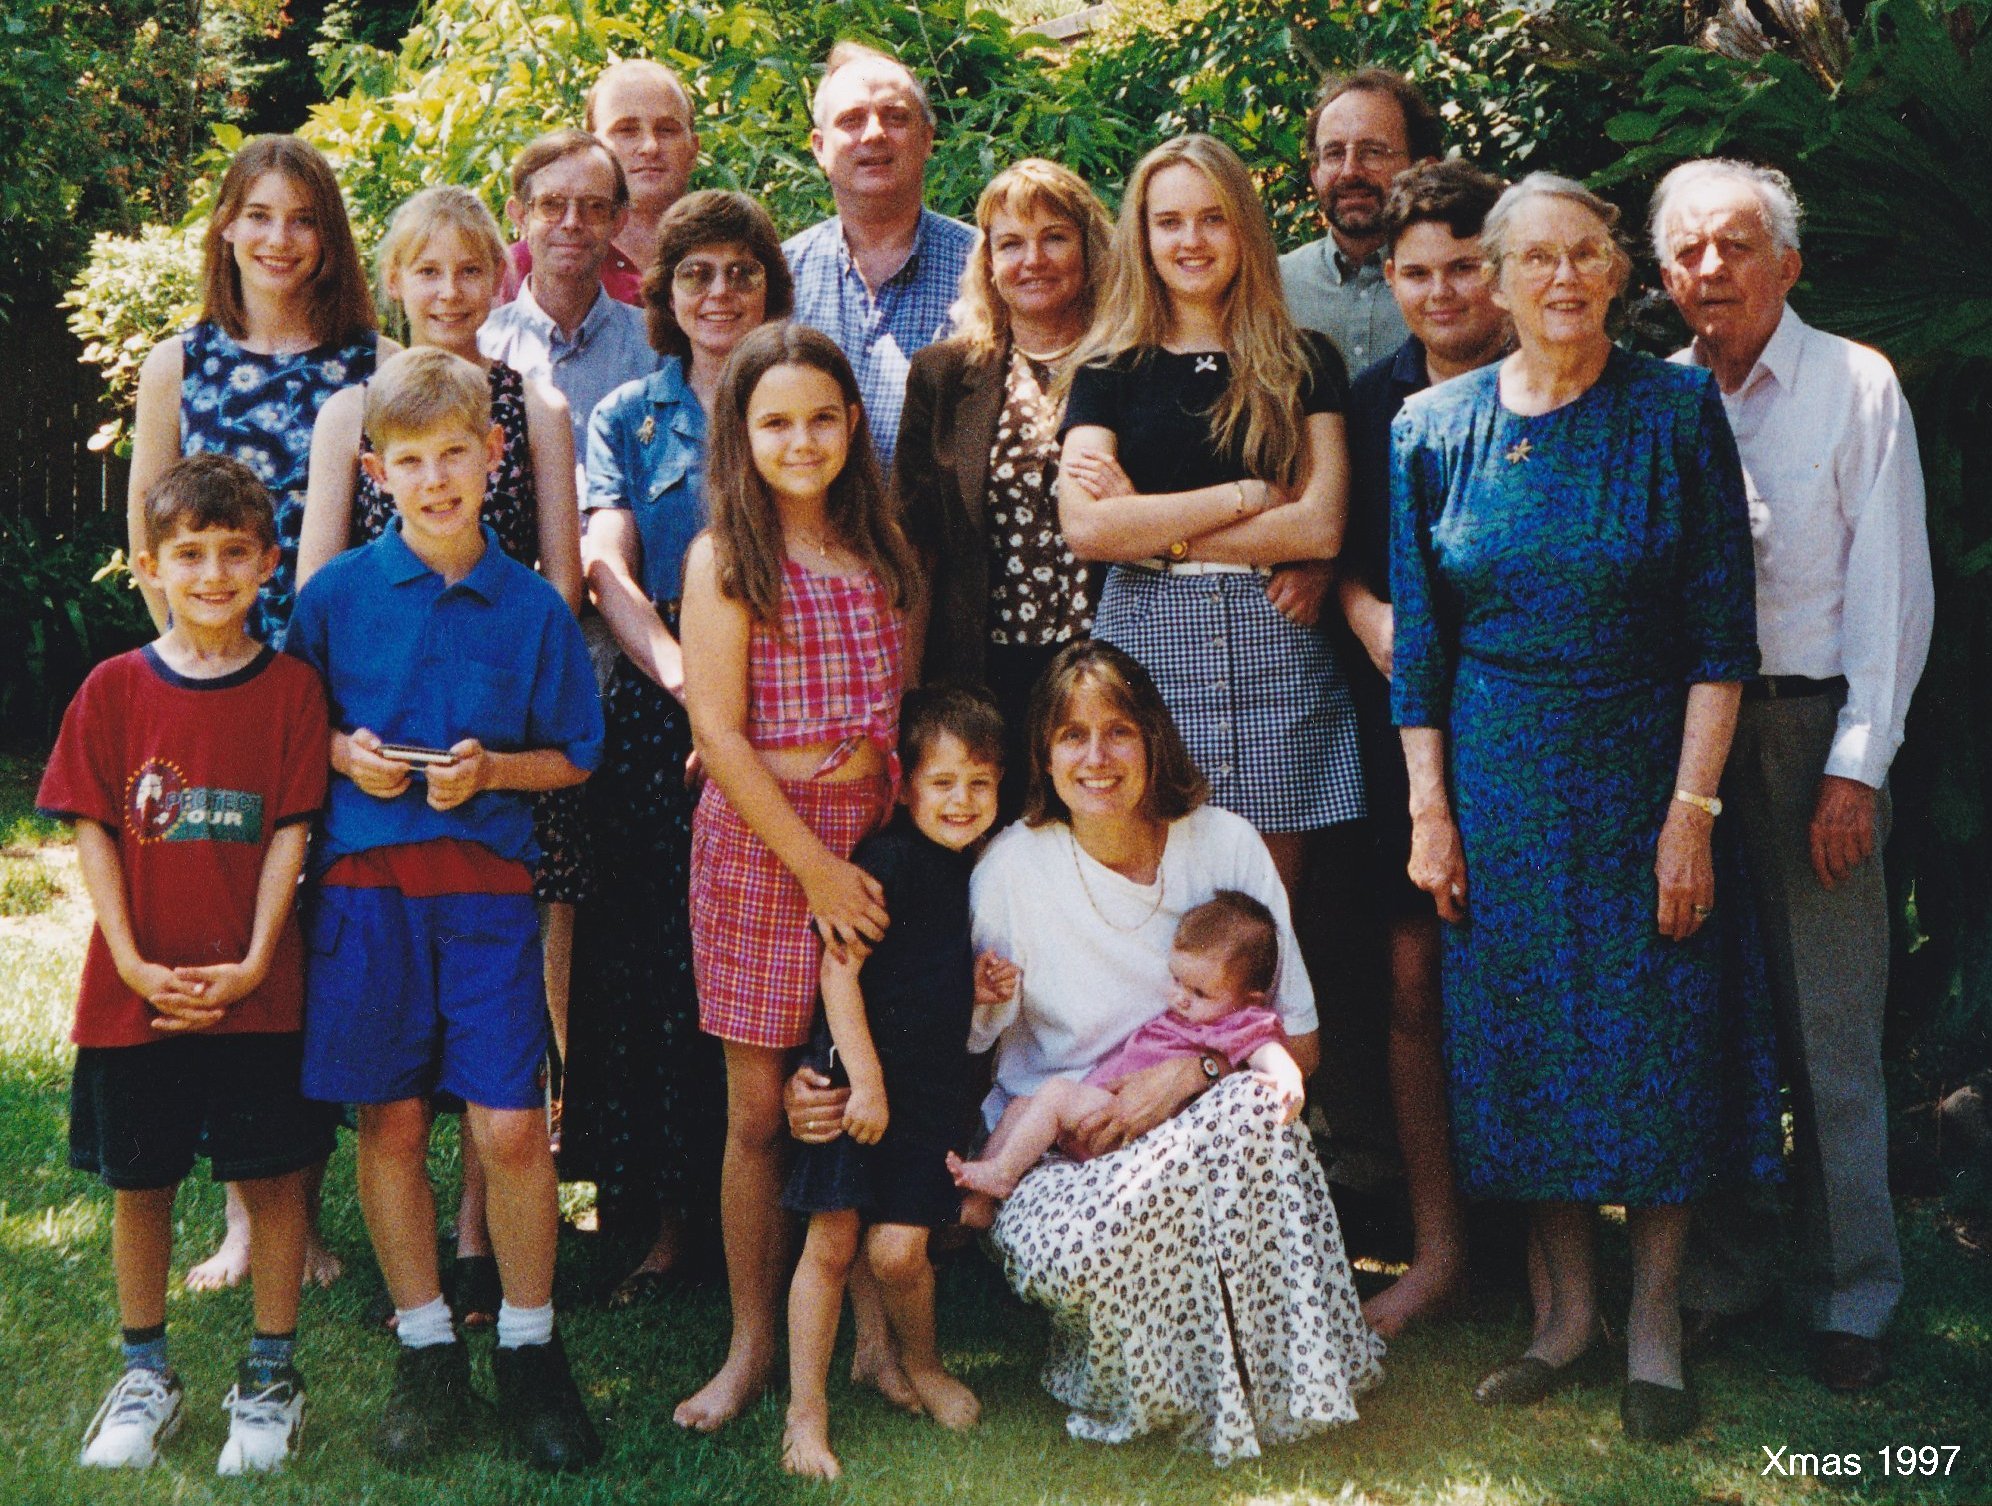 MALC family - Xmas 1997